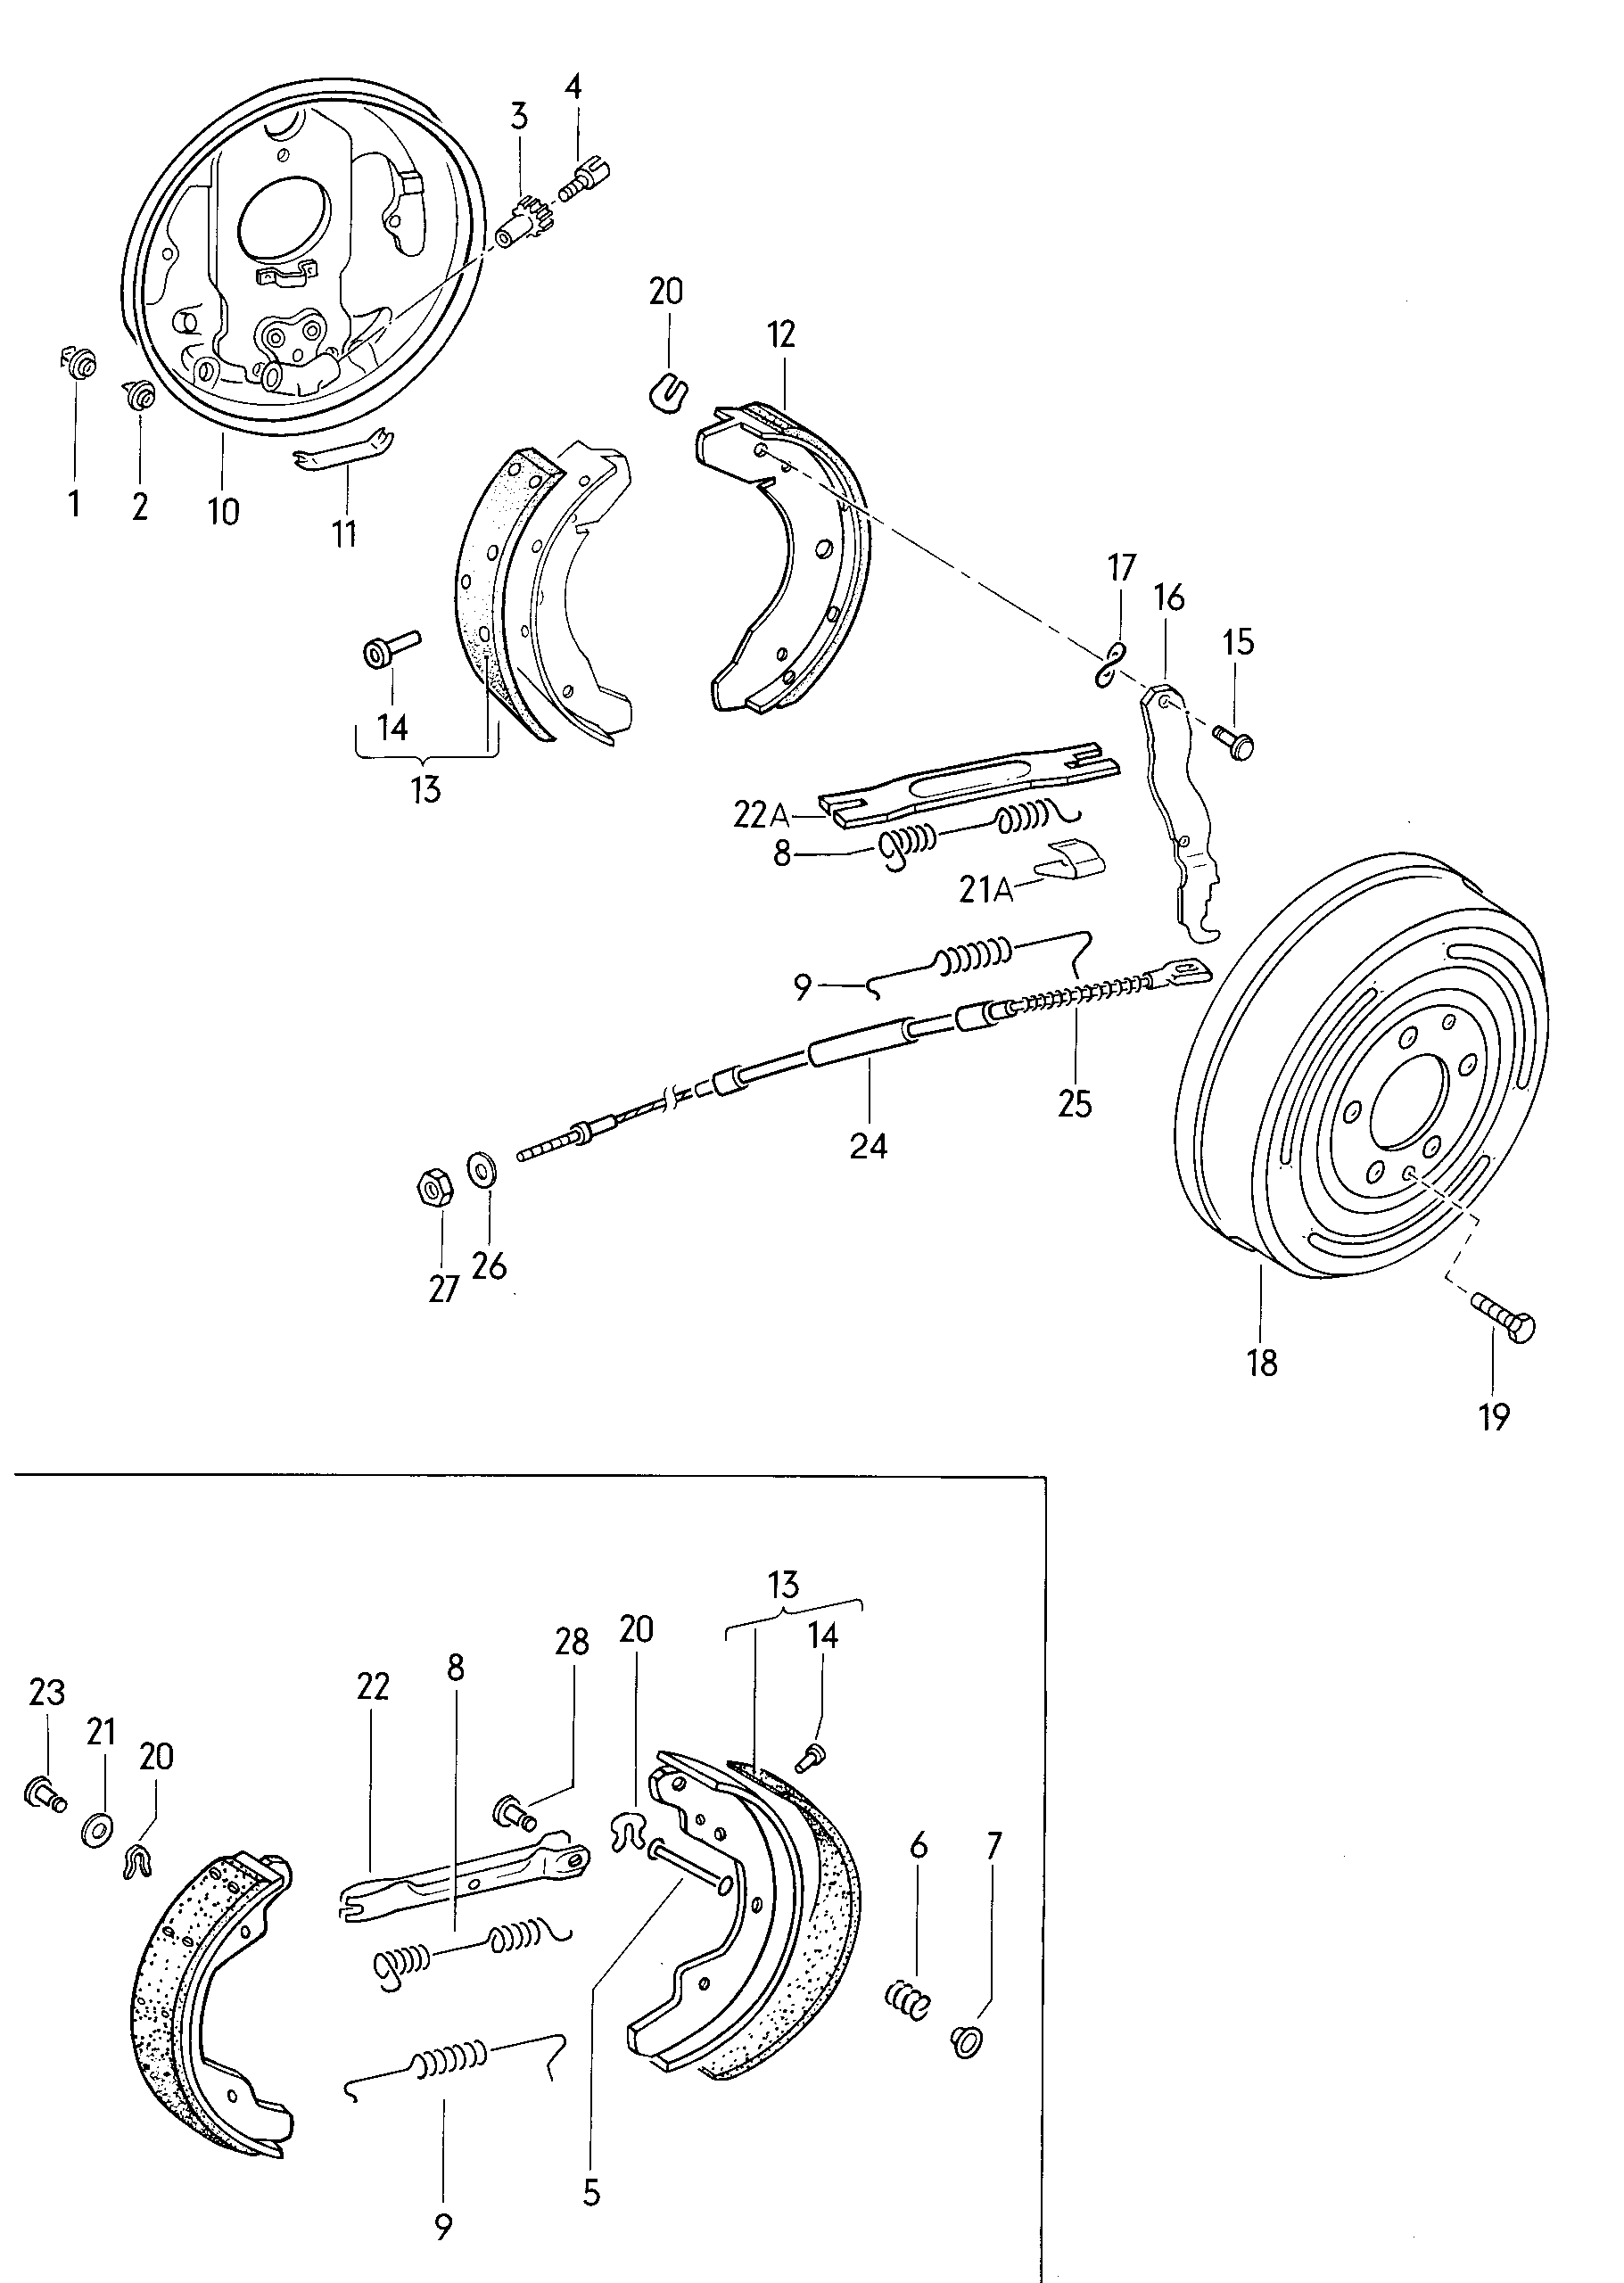 ankerplaat; remschoen met voering; remkabel - Typ 2/syncro(T2)  